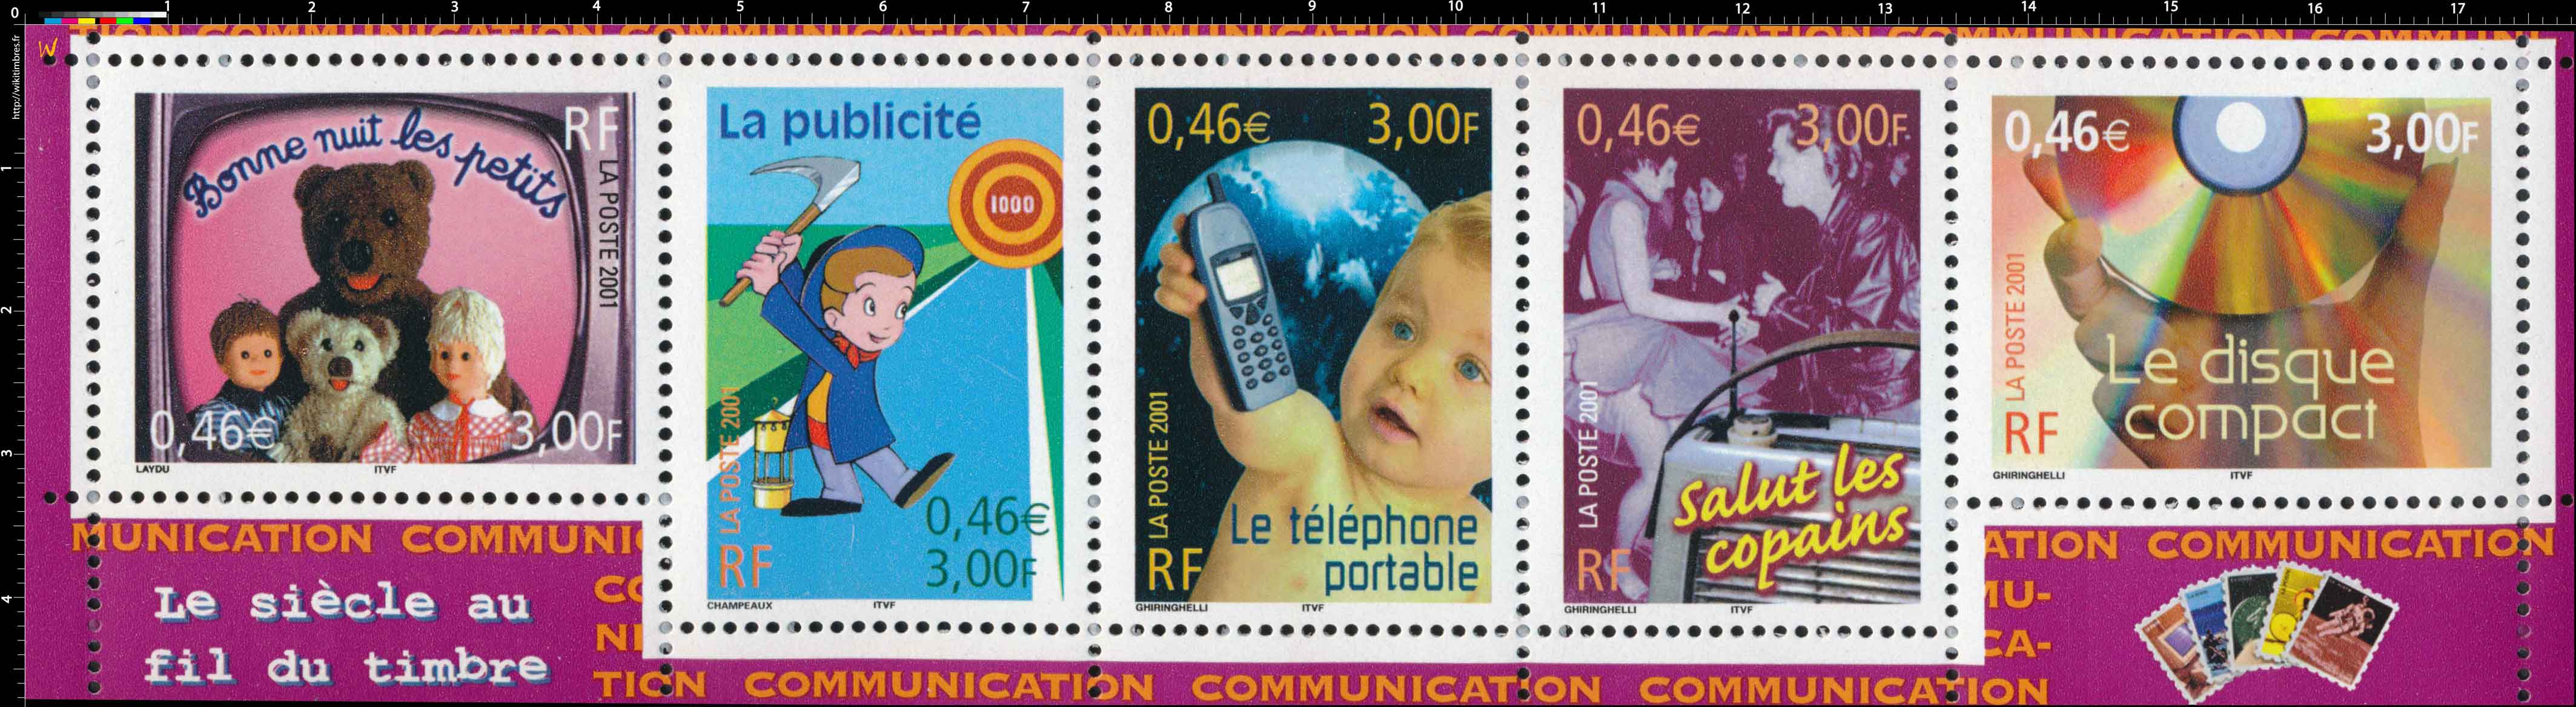 2001 Le siècle au fil du timbre   COMMUNICATION